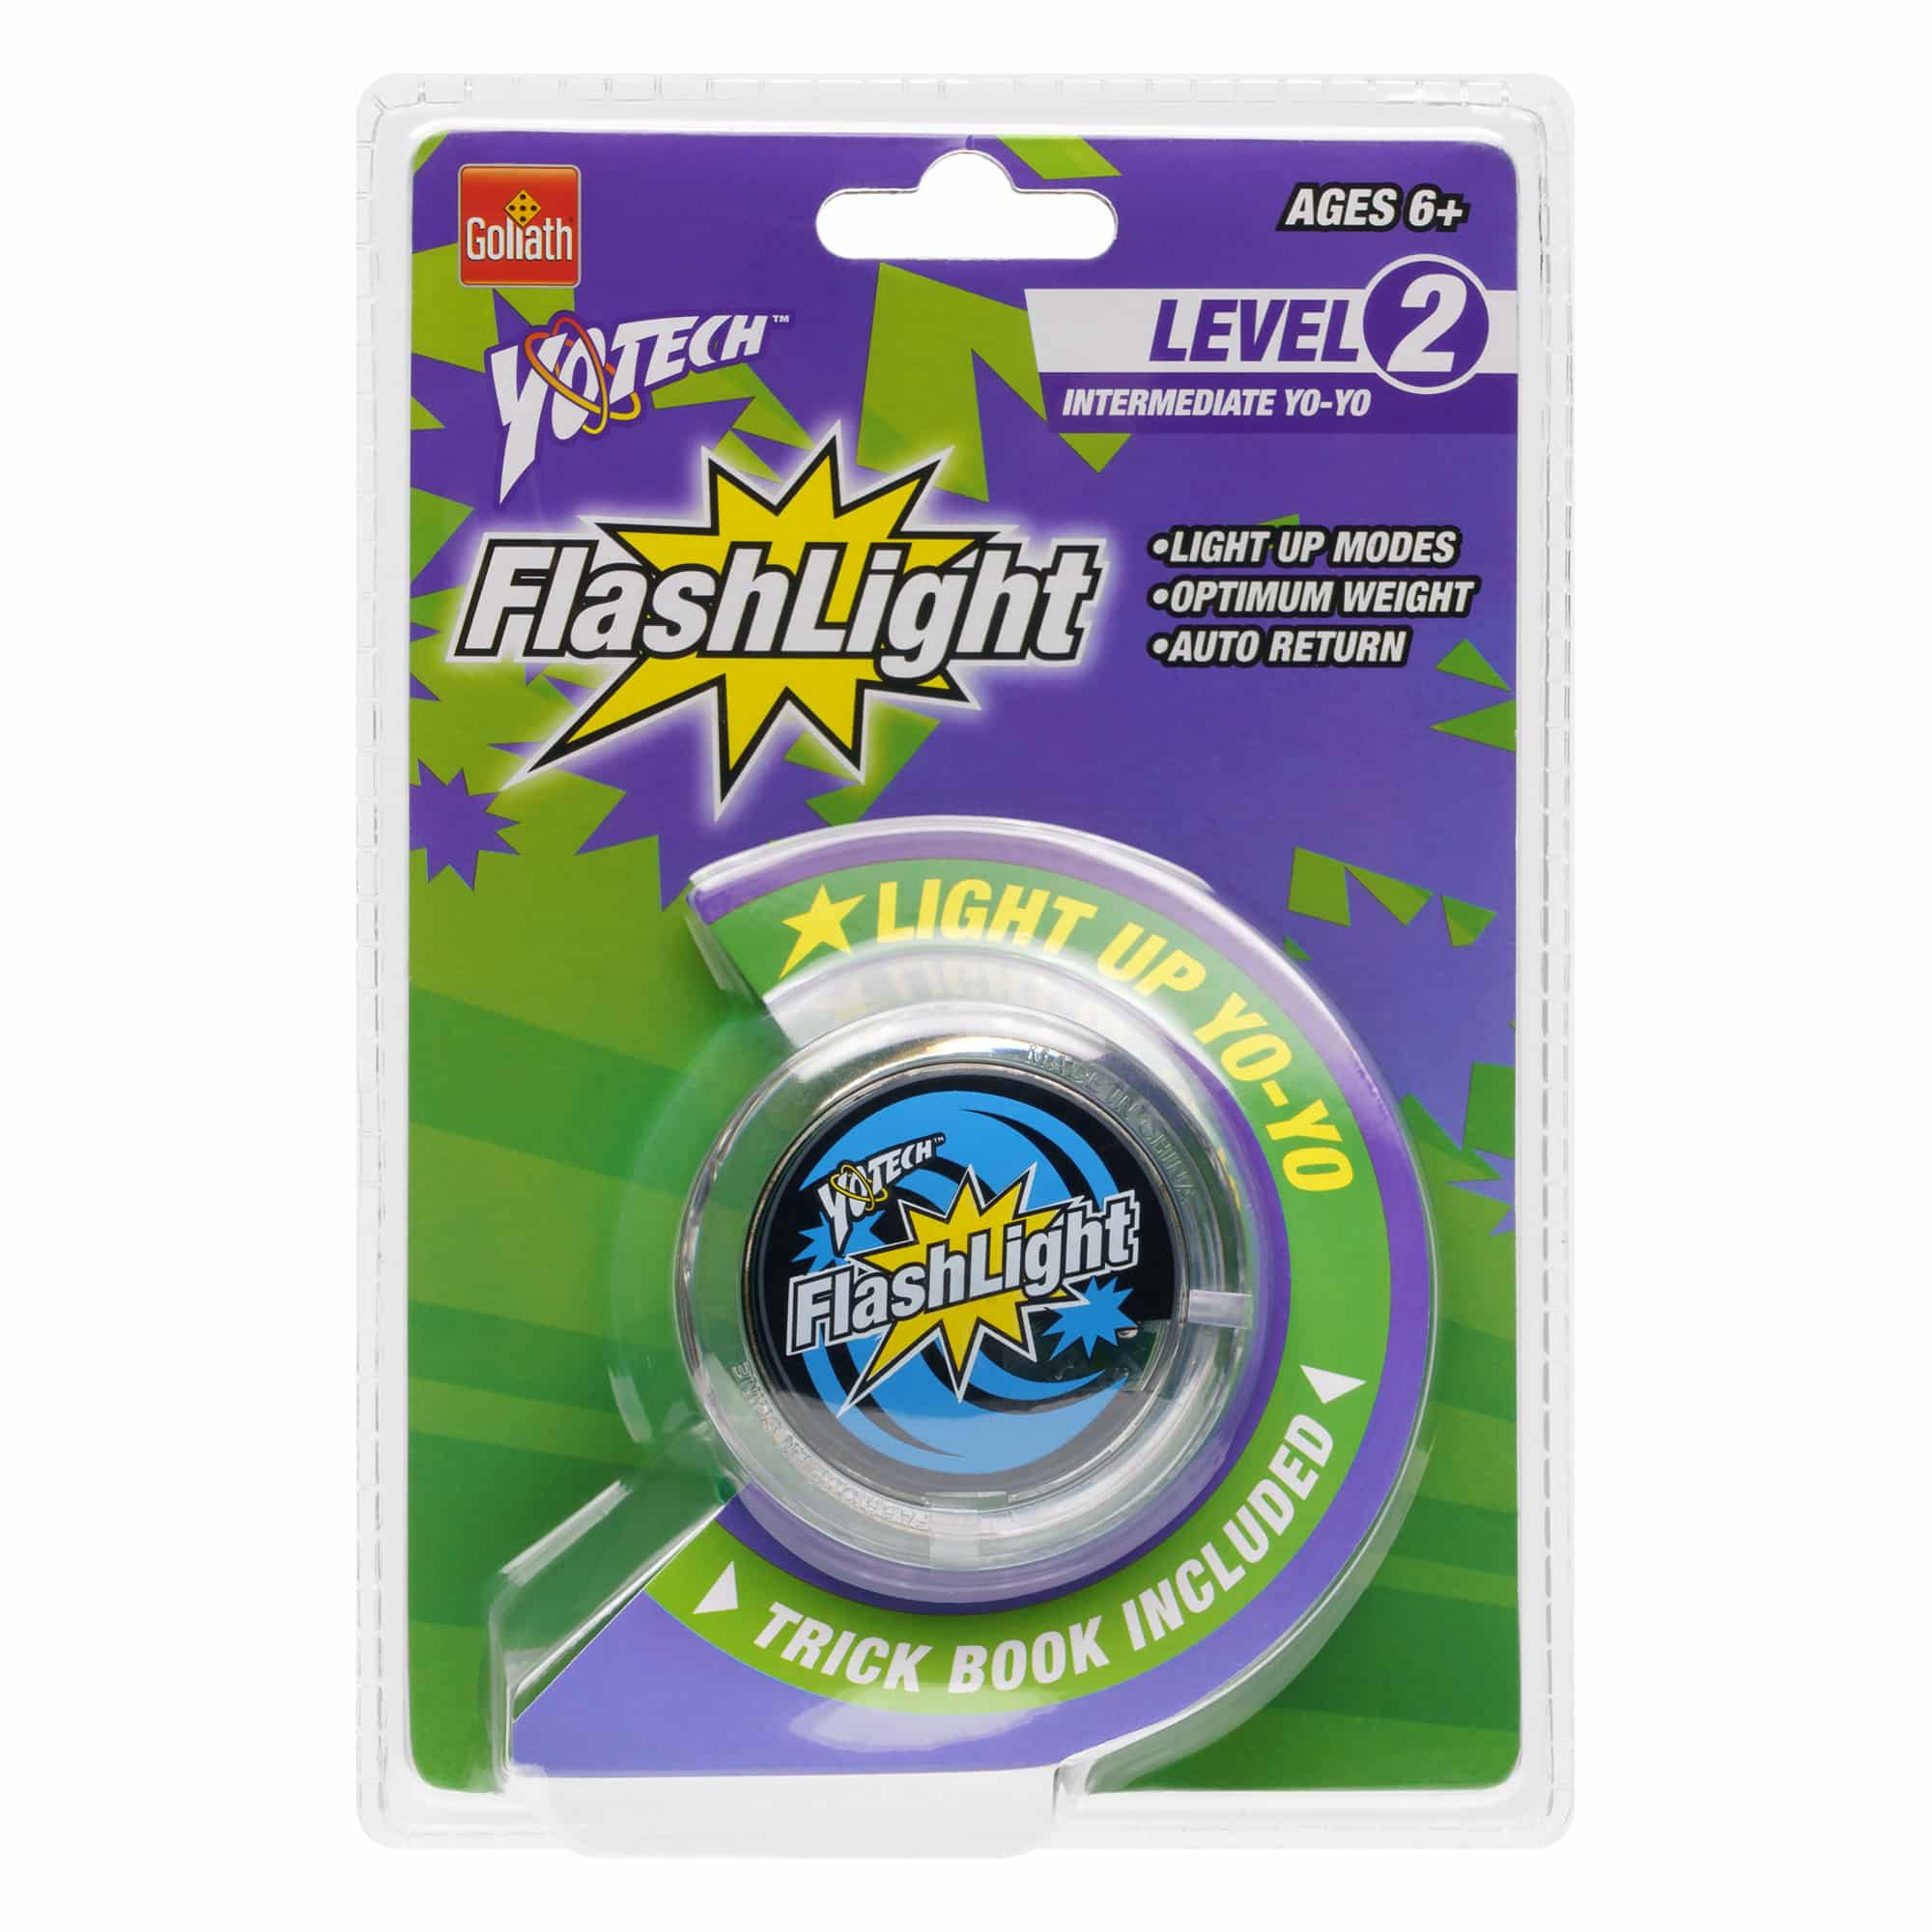 Yotech - FlashLIGHT Level 2 YoYo - Clear